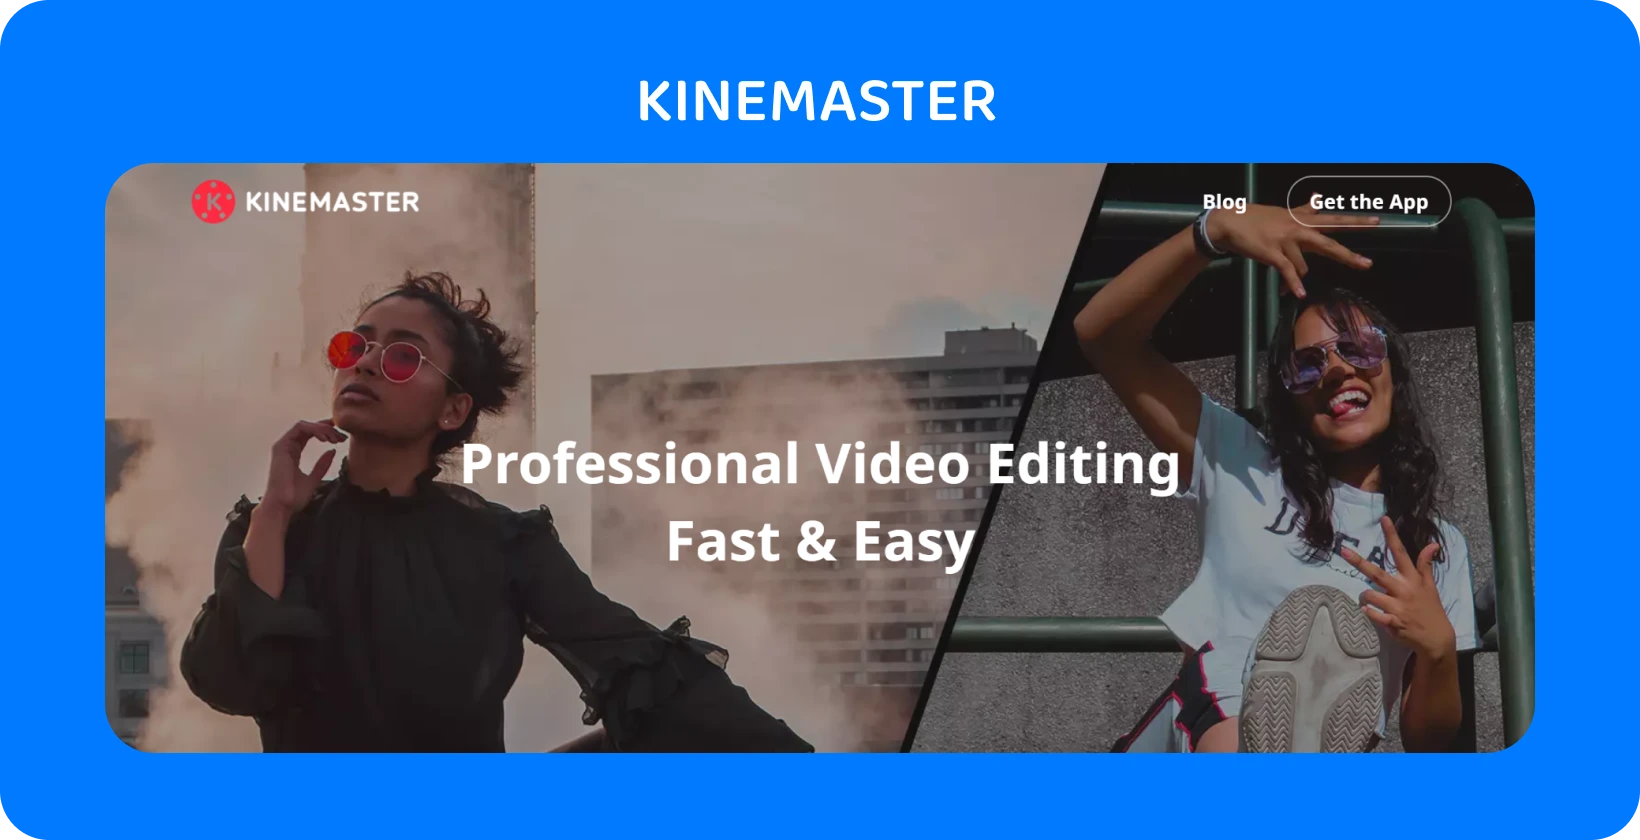 2人のモデルがポーズをとるKineMasterアプリの広告で、高速で簡単なプロのビデオ編集を強調しています。